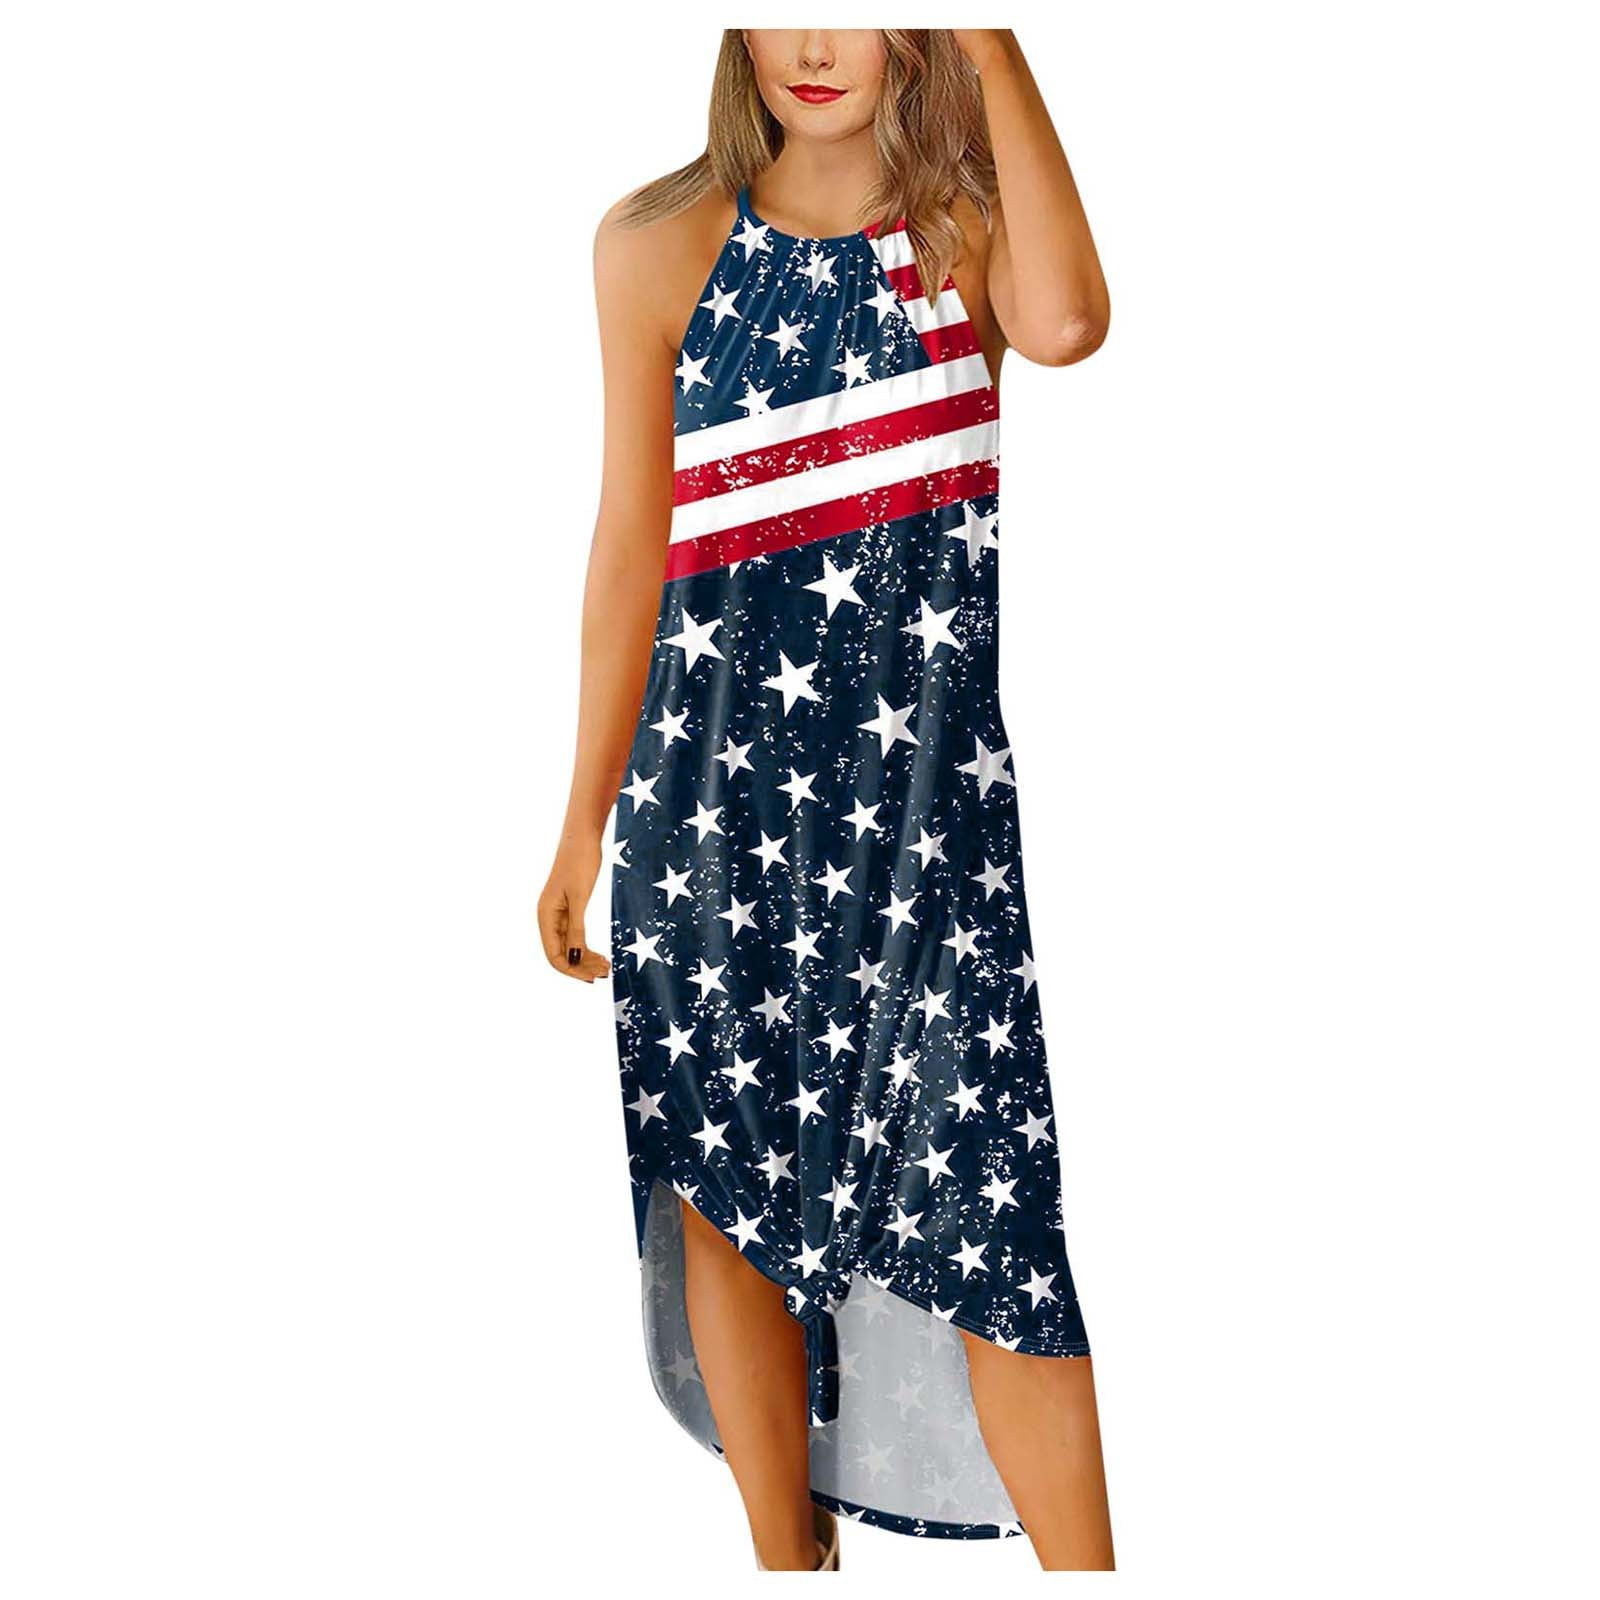 Dress for Women Womens Casual Summer Mini Sleeveless American Flag/Floral Print Short Tank Dress A-Line Beach Sundress 